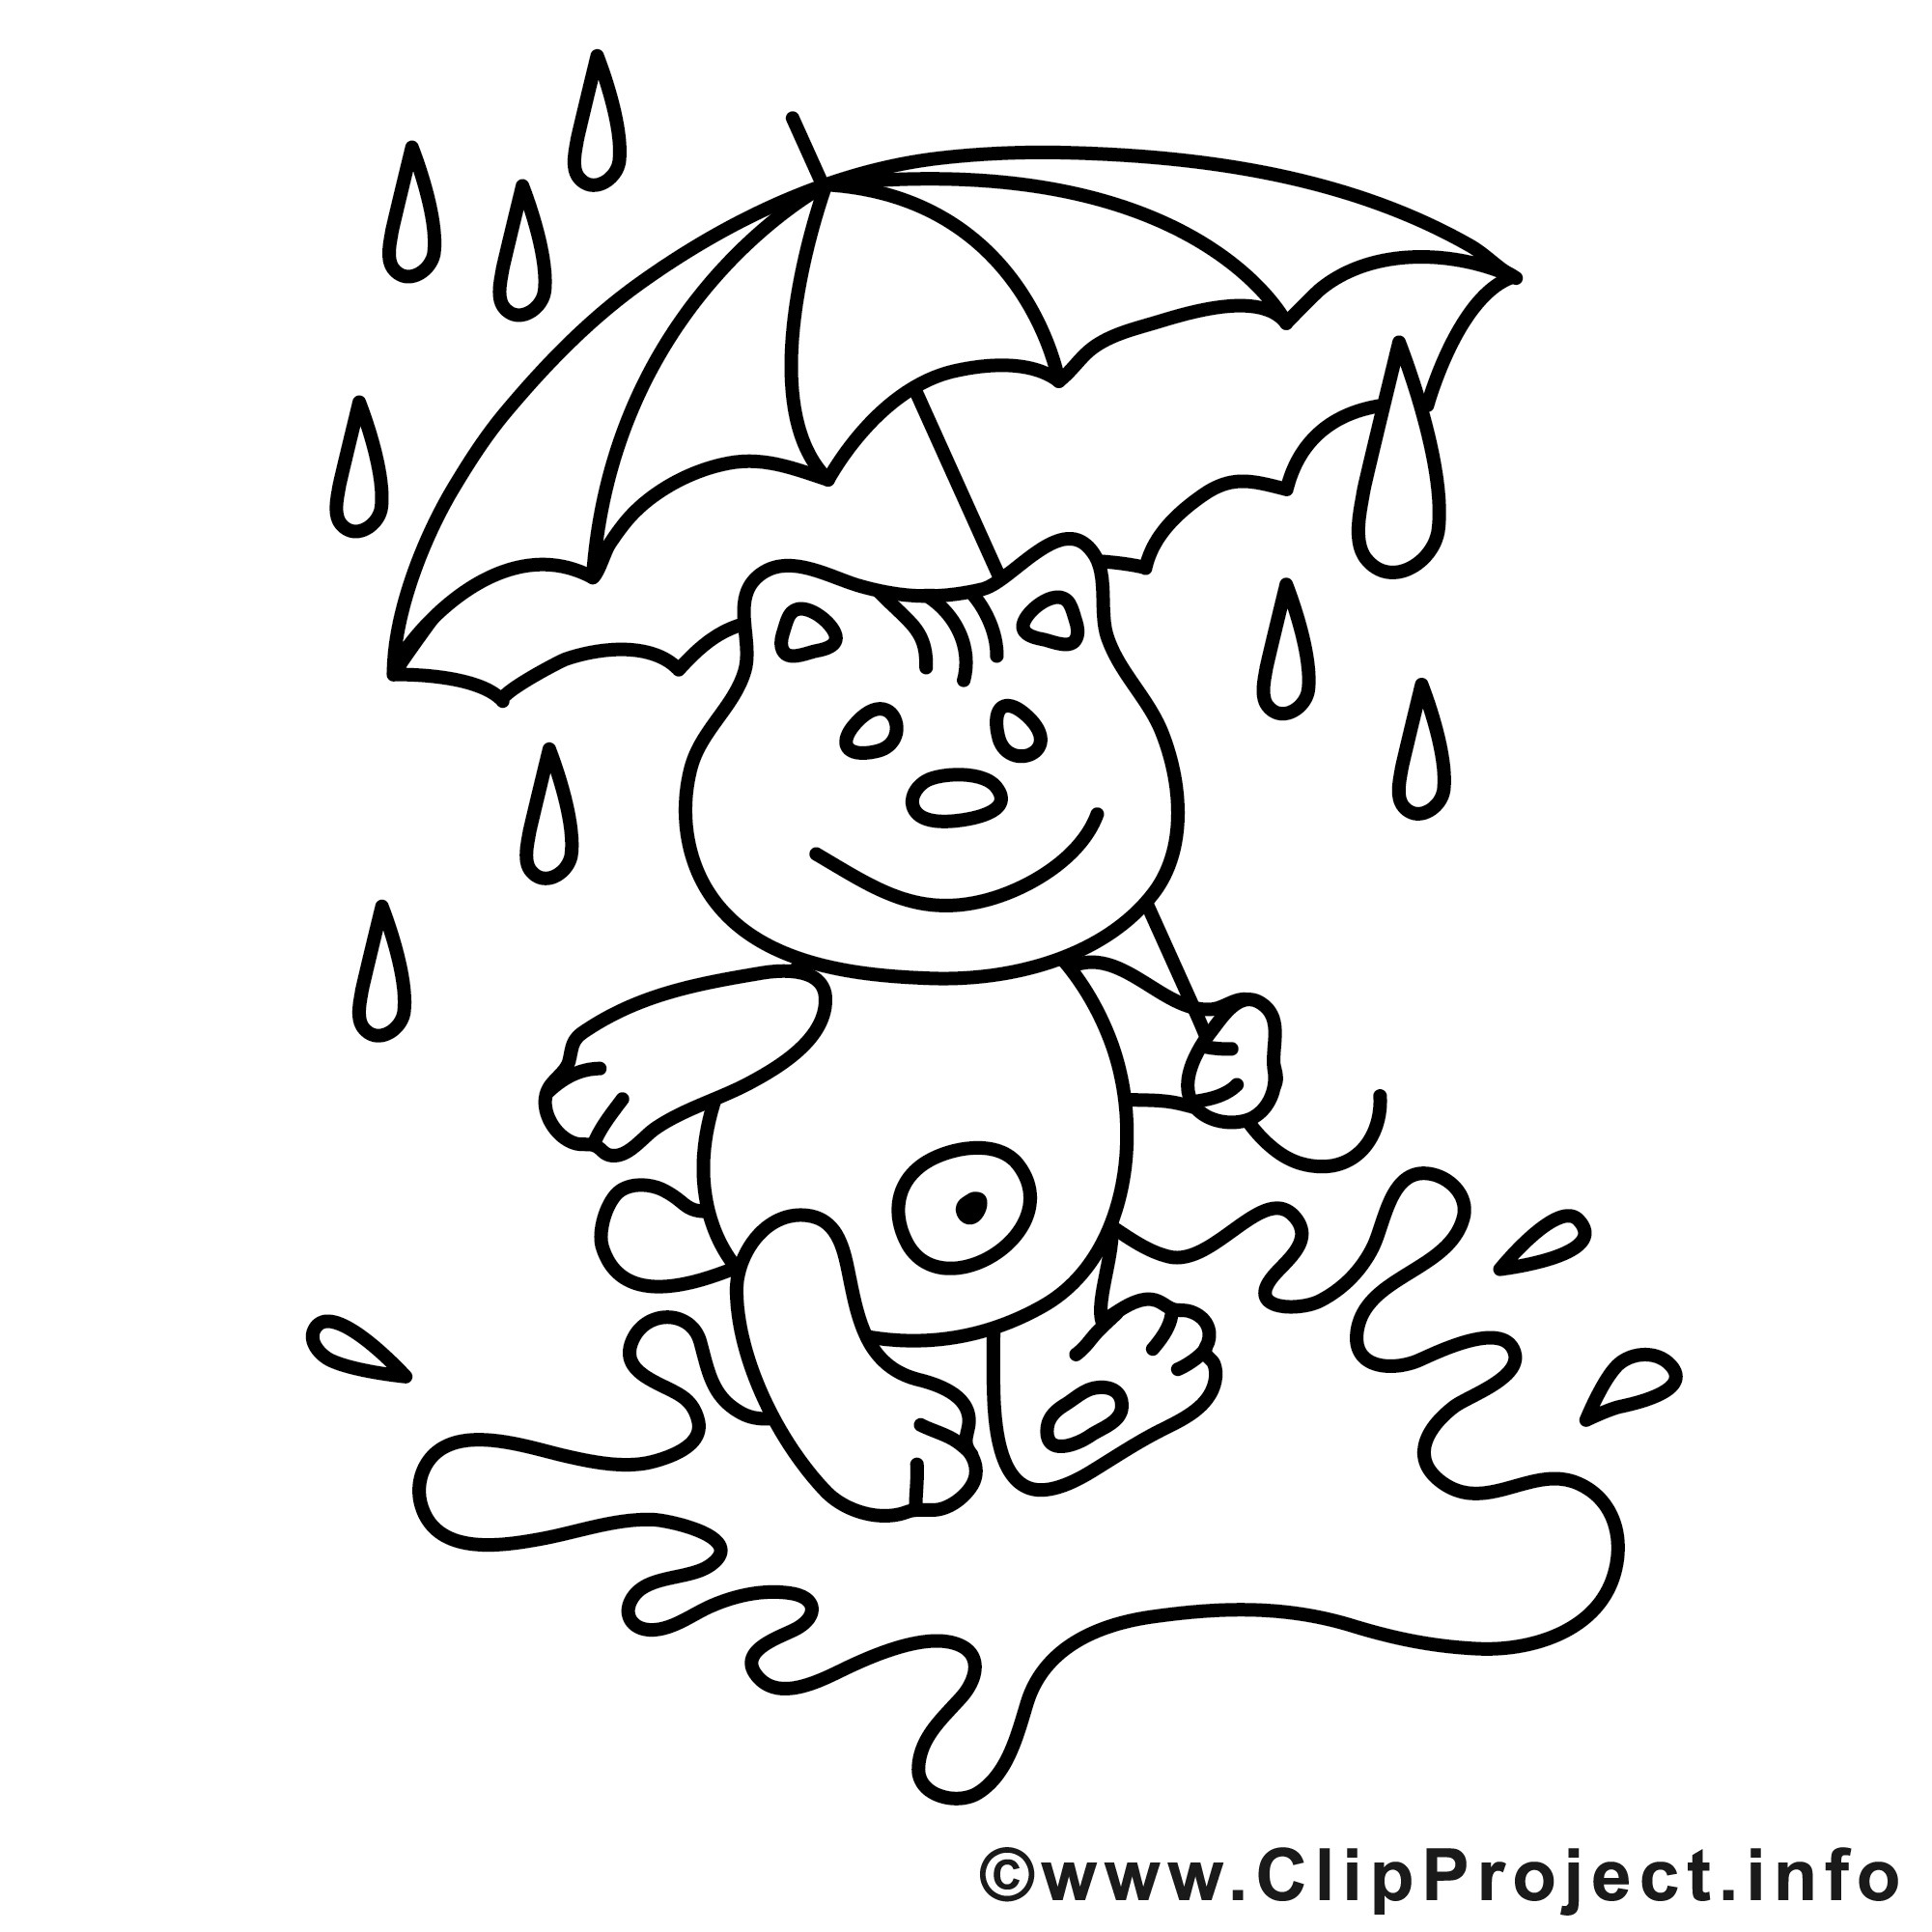 Malvorlagen Herbst
 Teddy unter dem Regenschirm kostenlose Herbst Malvorlage